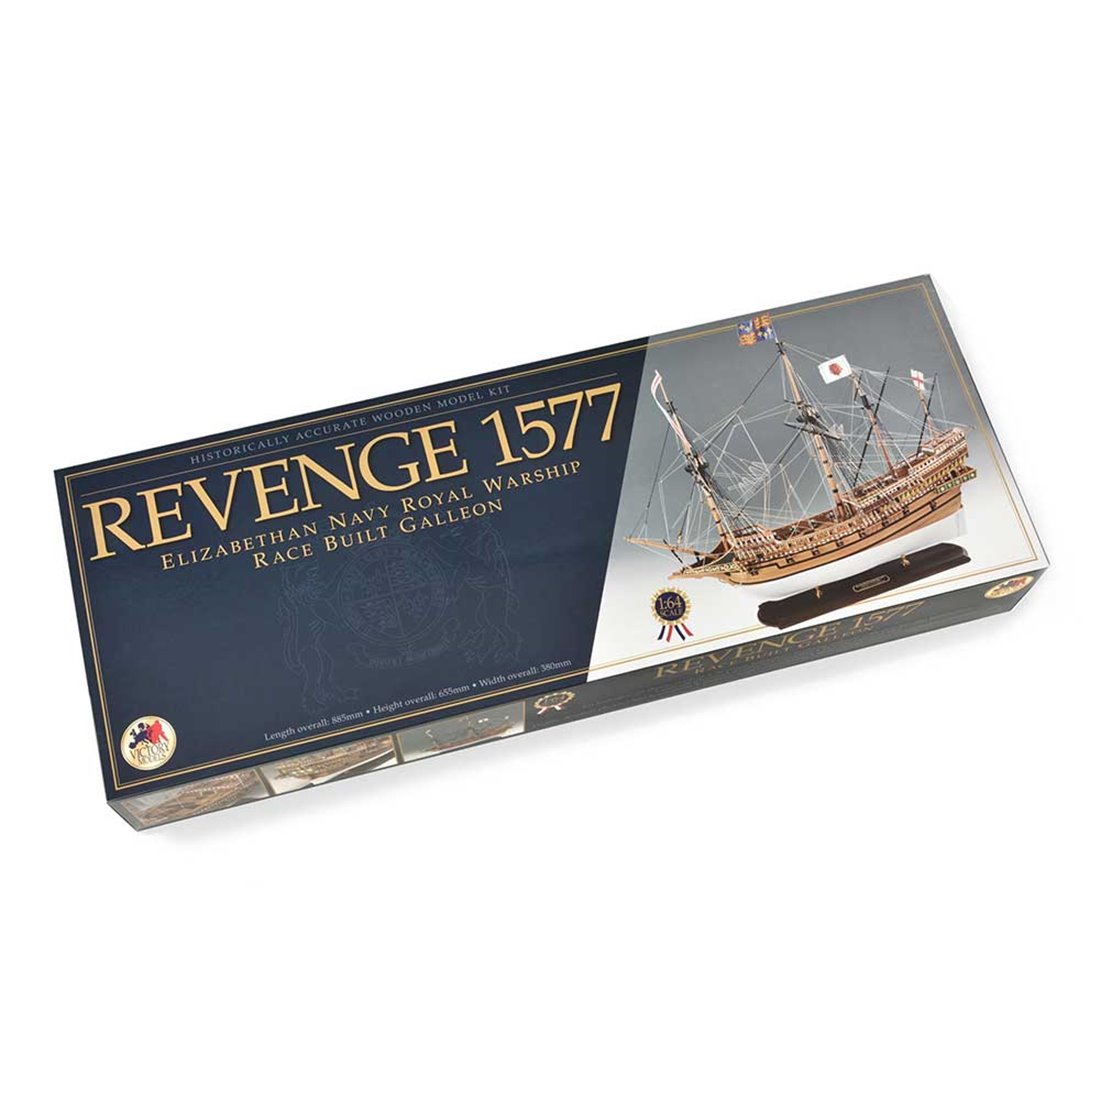 Revenge 1577